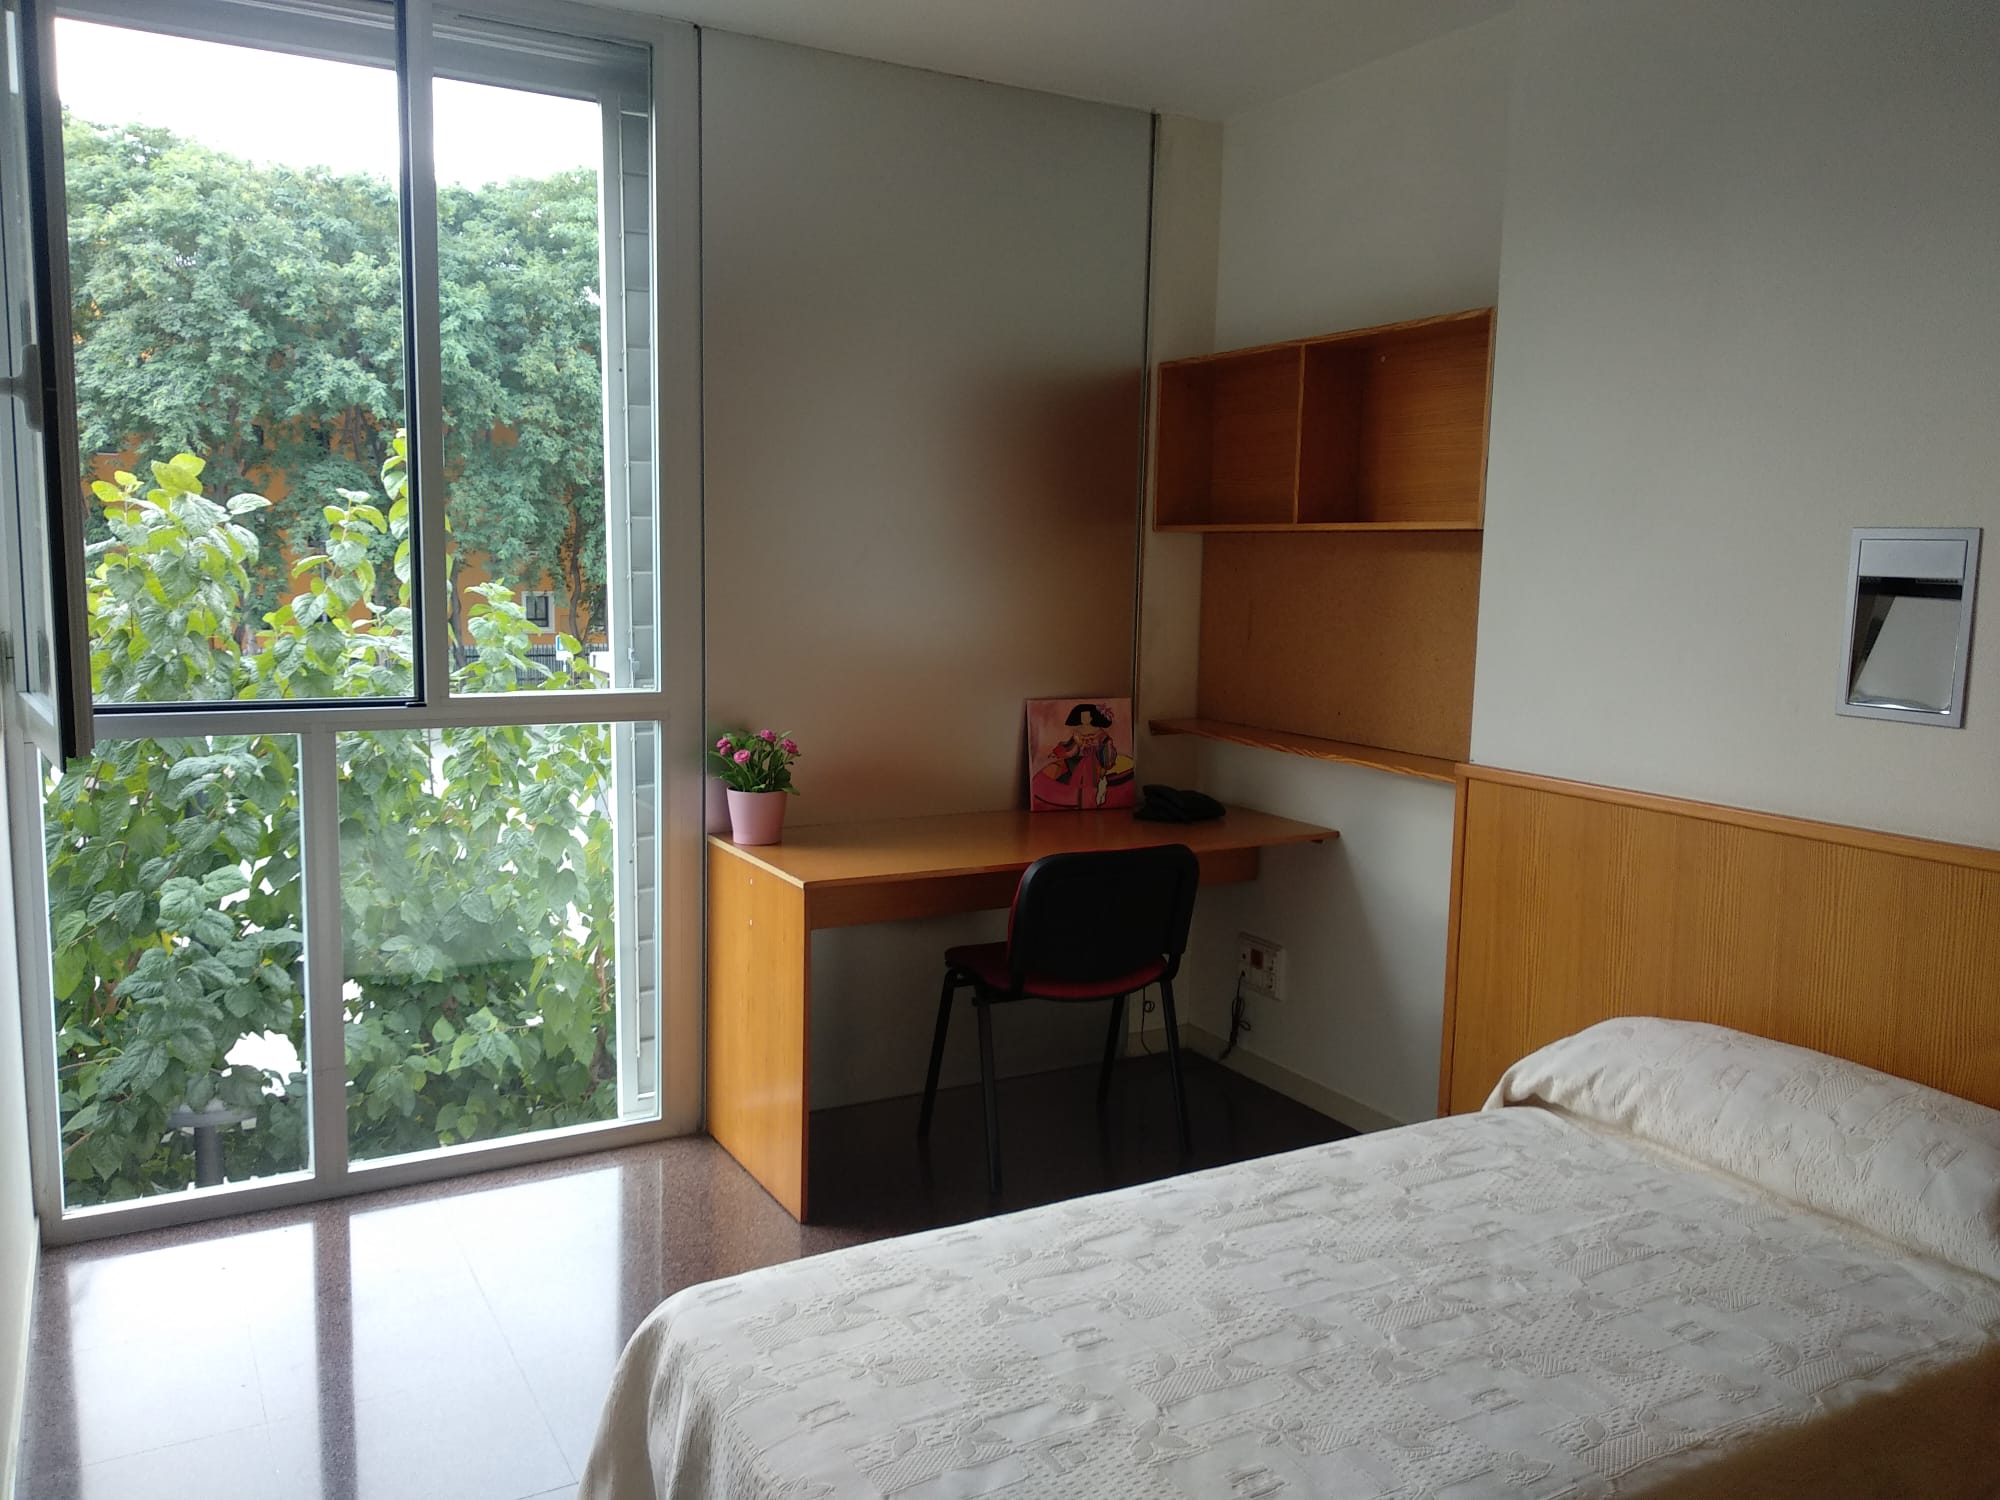 Habitación de residencia de estudiantes con amplio ventanal, cama estantería, mesa y silla